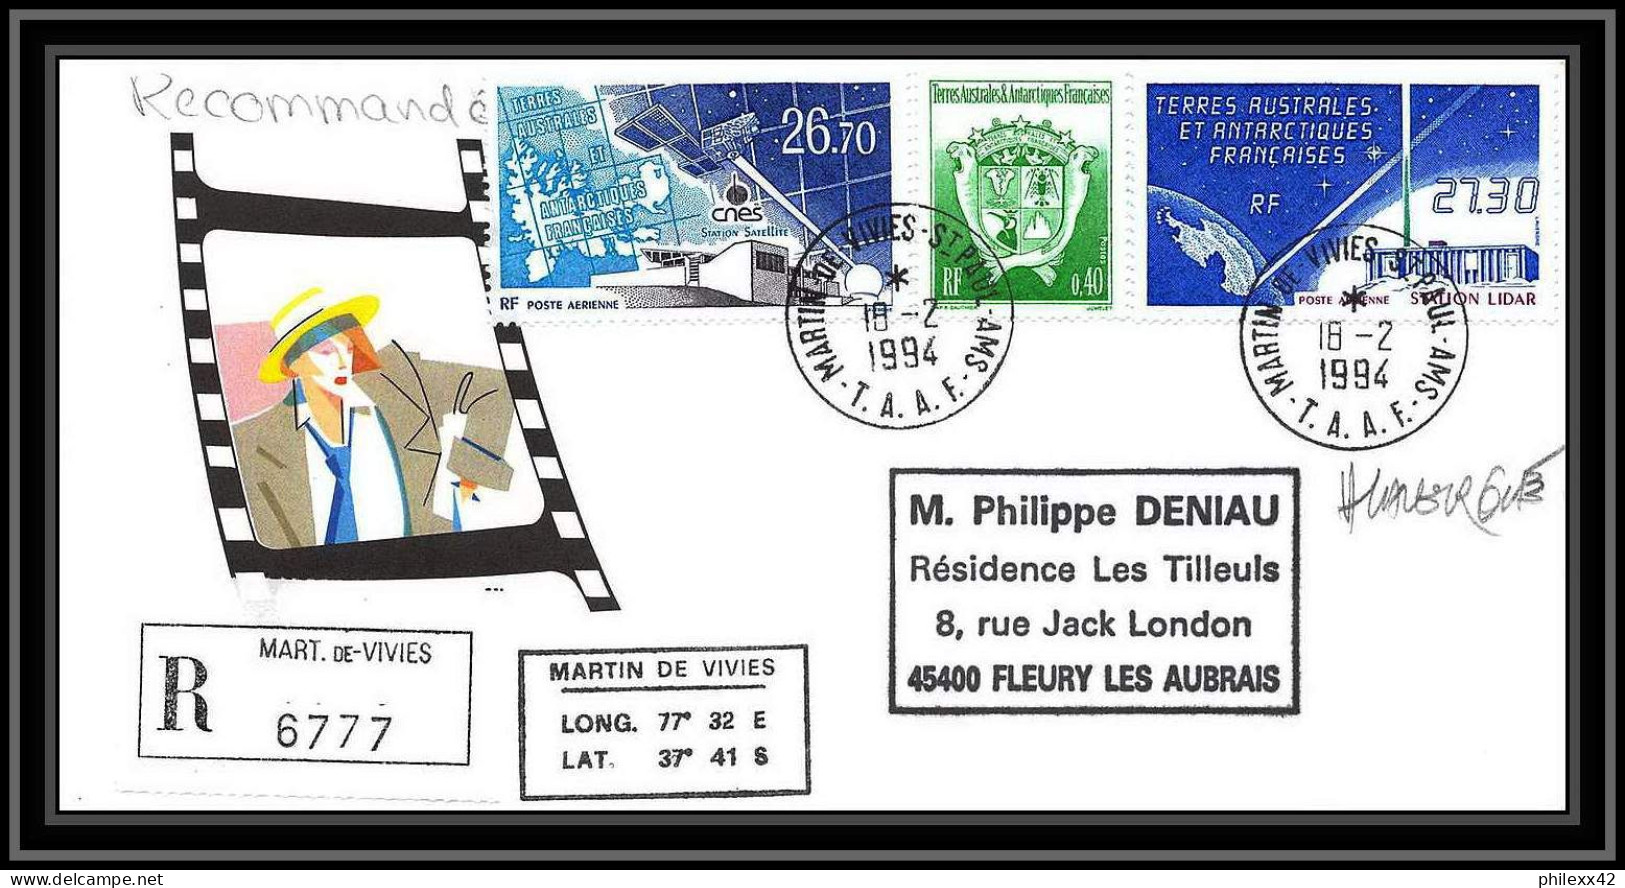 1136 lot de 4 Lettres avec cad différents Taaf terres australes Antarctic covers Satellite 1994 Signé signed recommandé